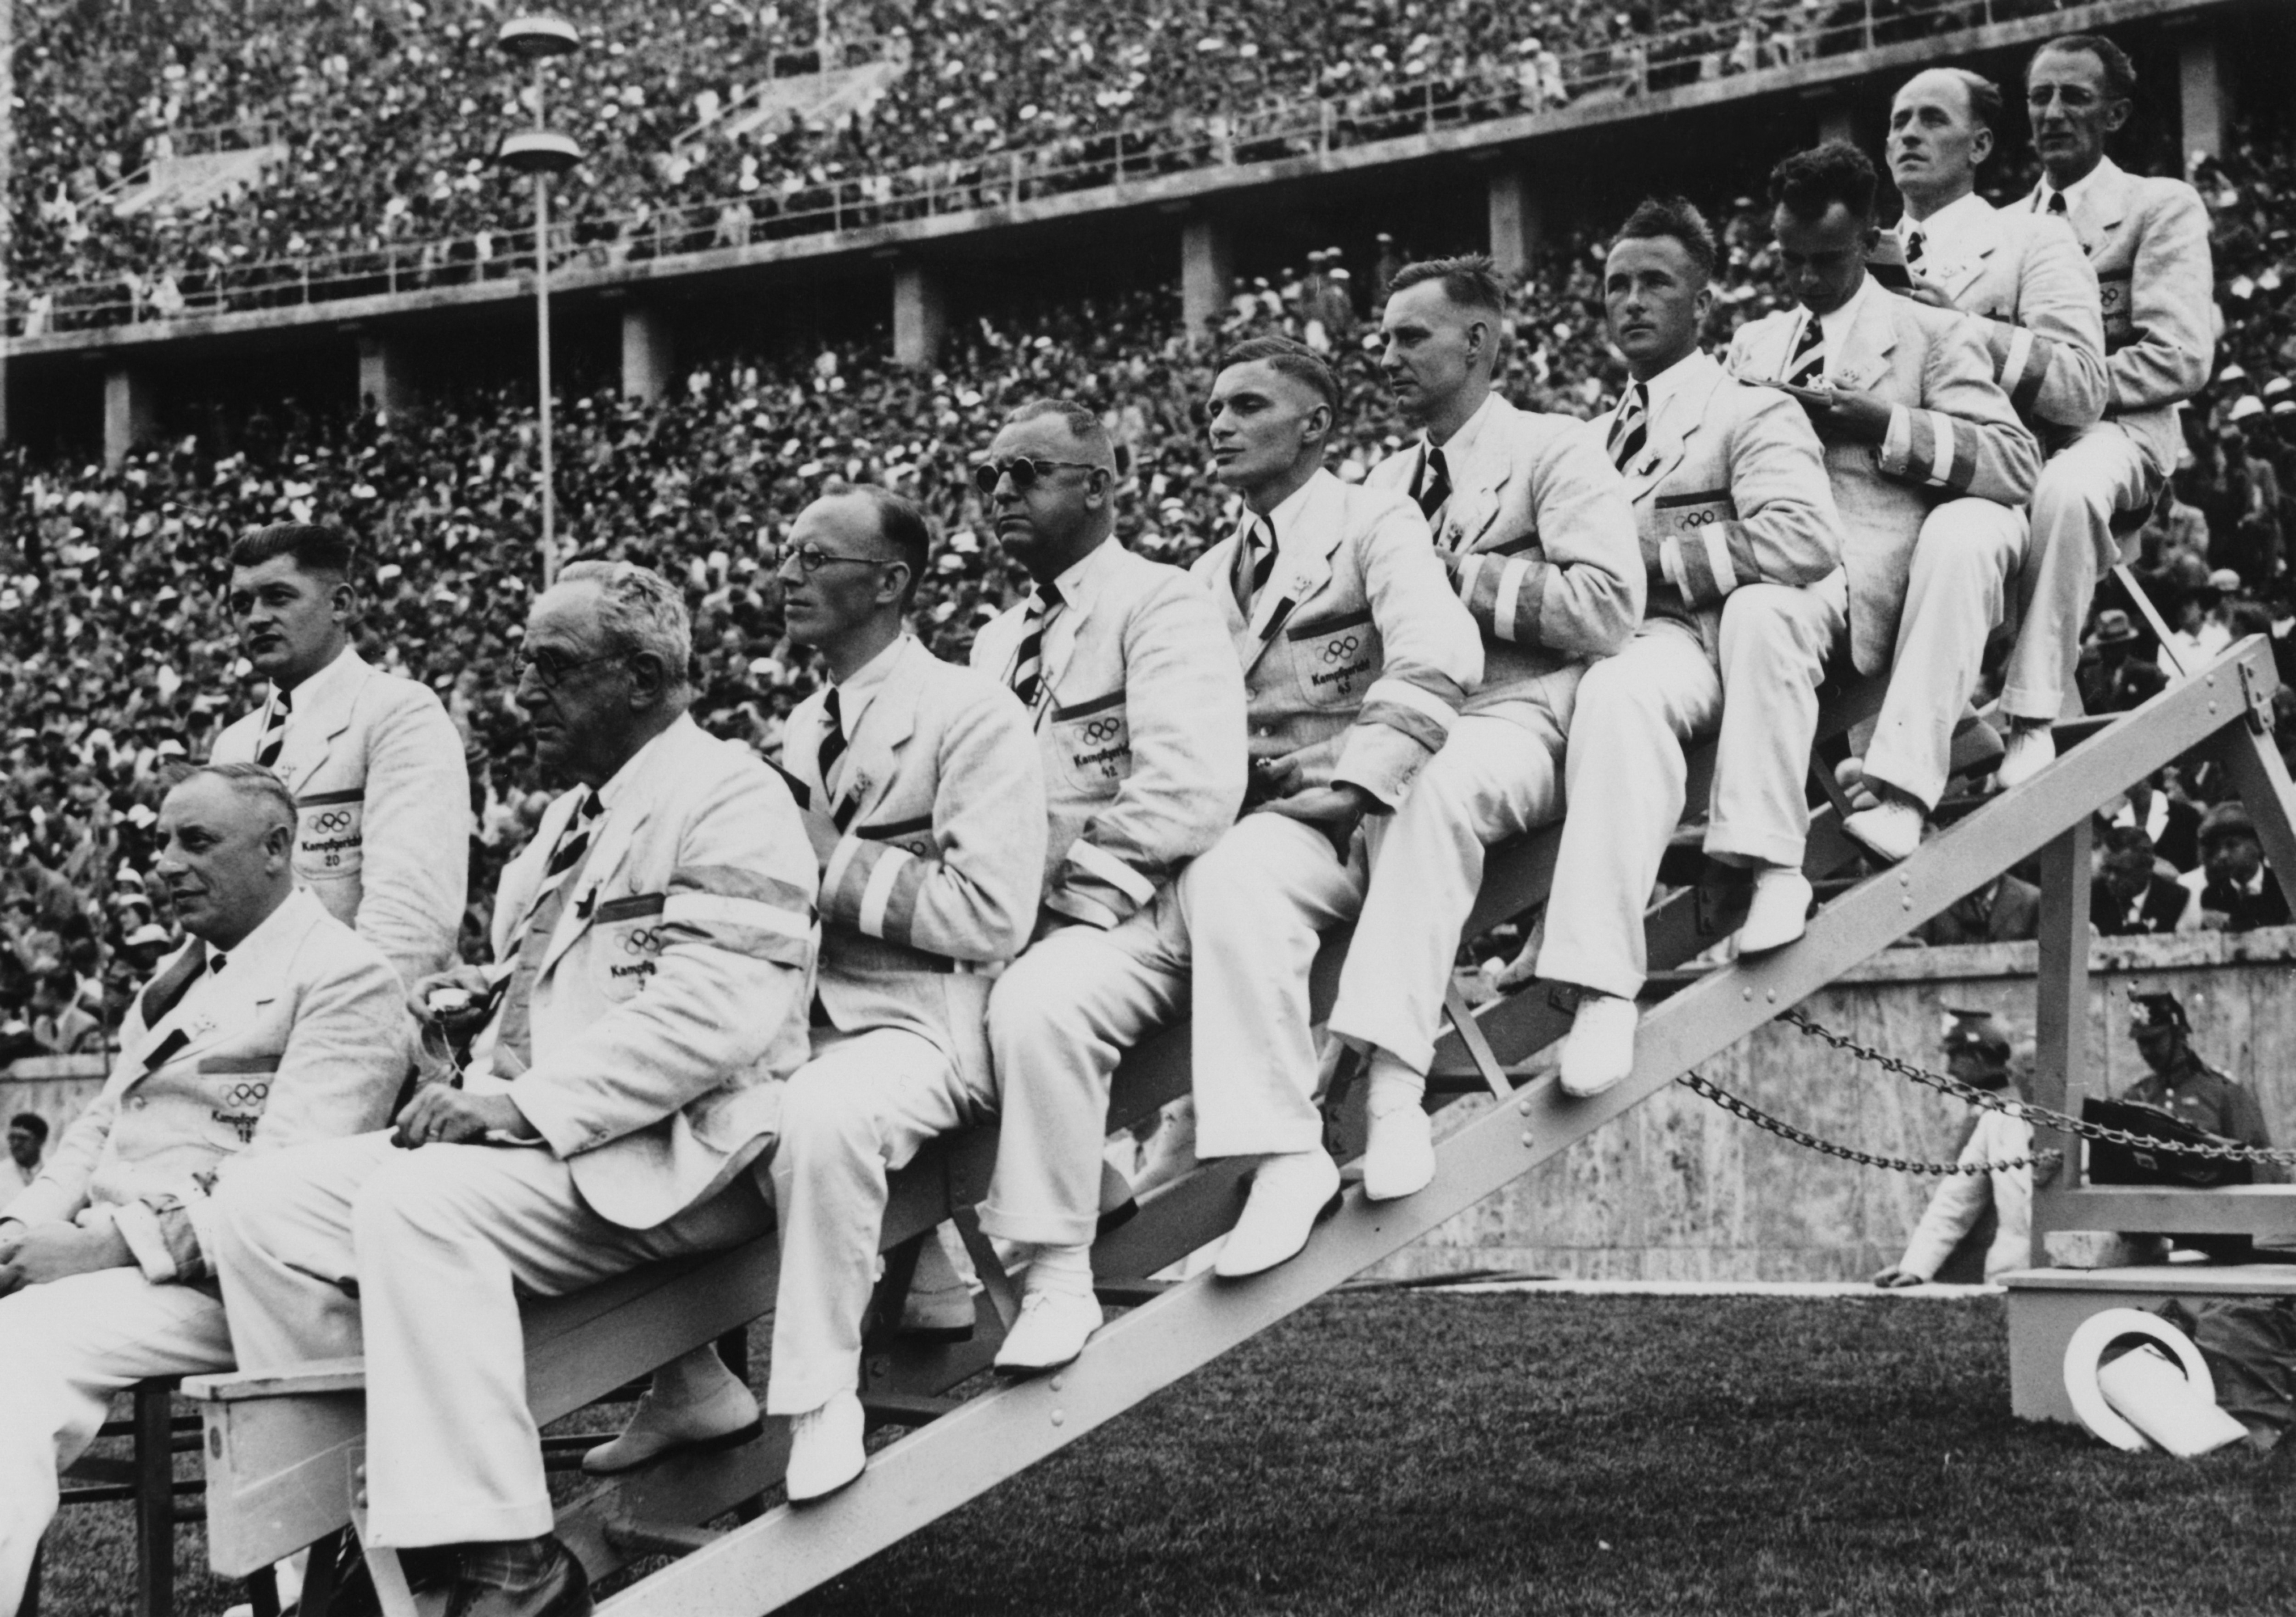 I guidici per la gara eliminatoria dei 100 metri il 1 agosto 1936. Owens vincerà la finale dei 100 metri il giorno dopo, il 2 agosto